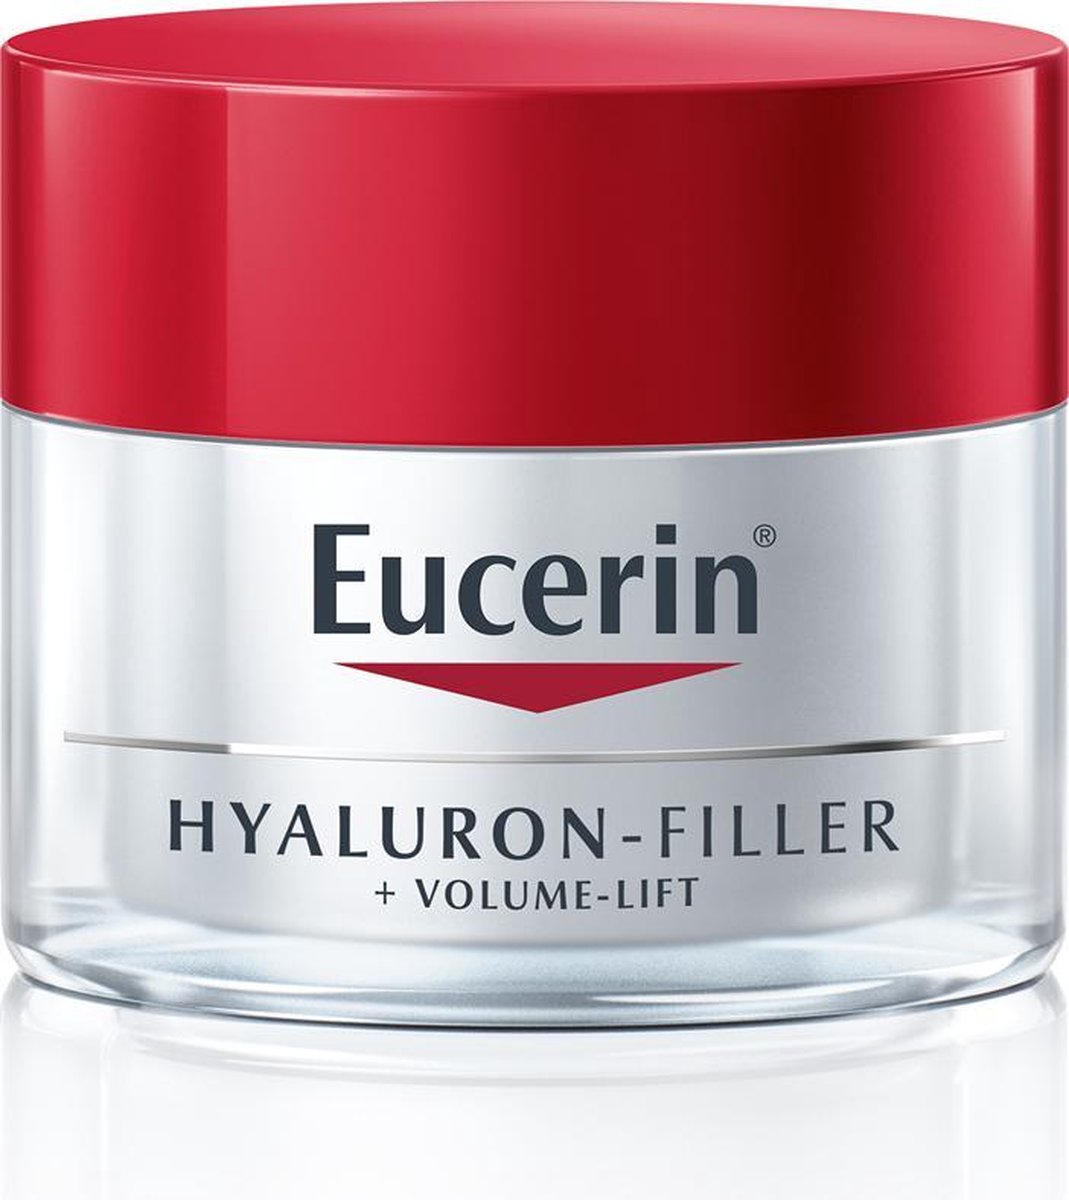 Eucerin Hyaluron-Filler + Volume-Lift Dagcrème - 50ml